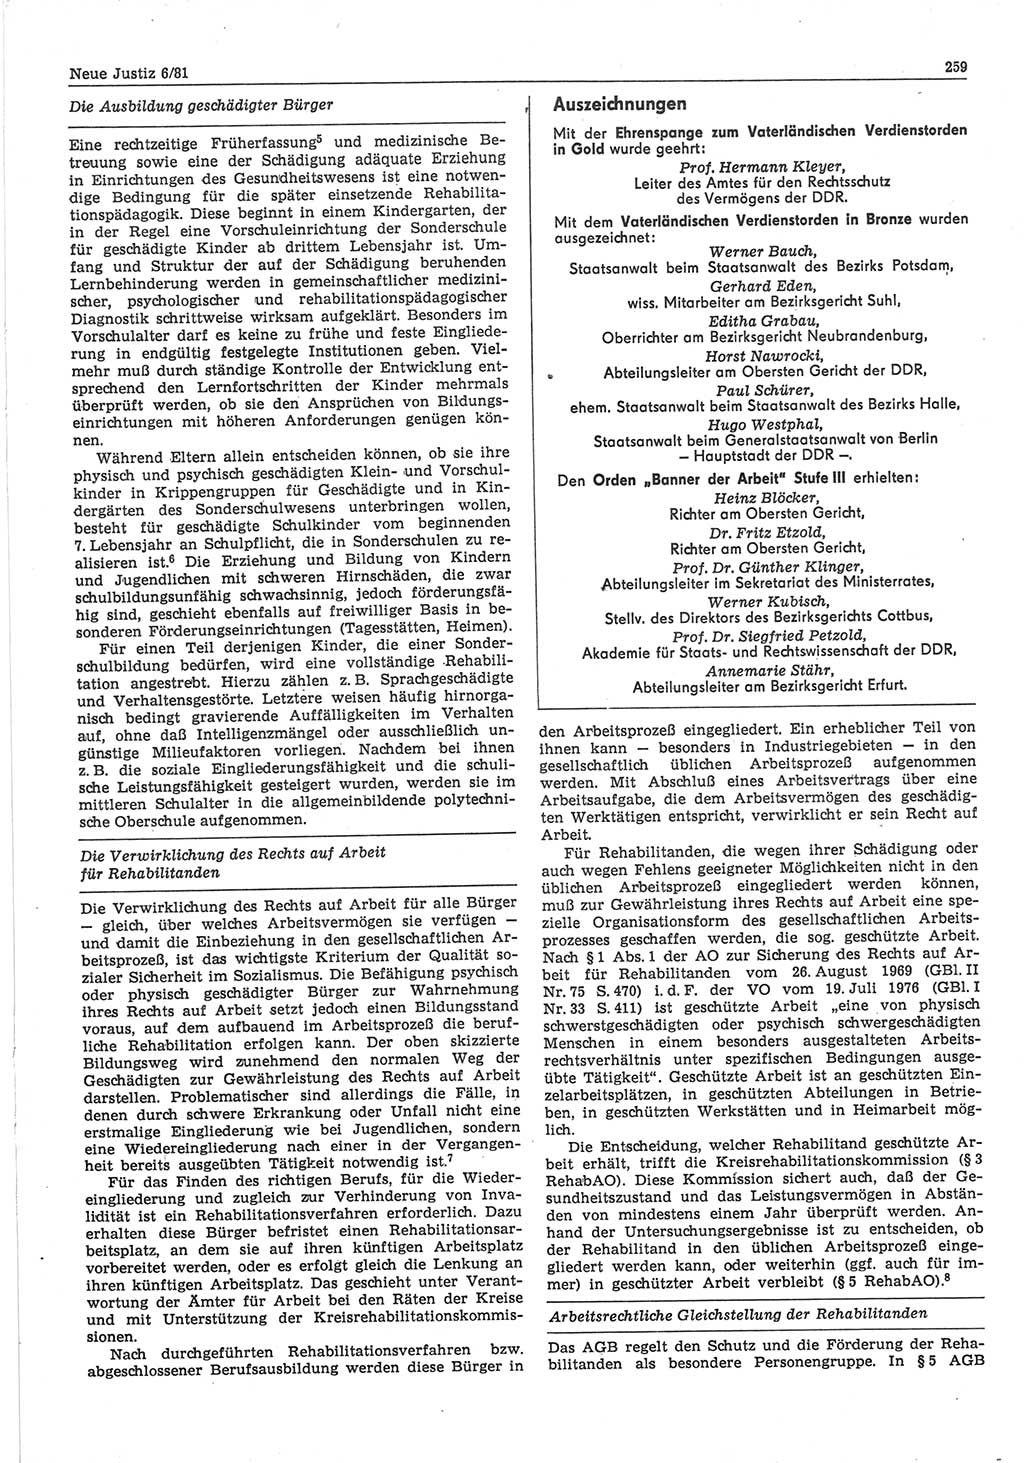 Neue Justiz (NJ), Zeitschrift für sozialistisches Recht und Gesetzlichkeit [Deutsche Demokratische Republik (DDR)], 35. Jahrgang 1981, Seite 259 (NJ DDR 1981, S. 259)